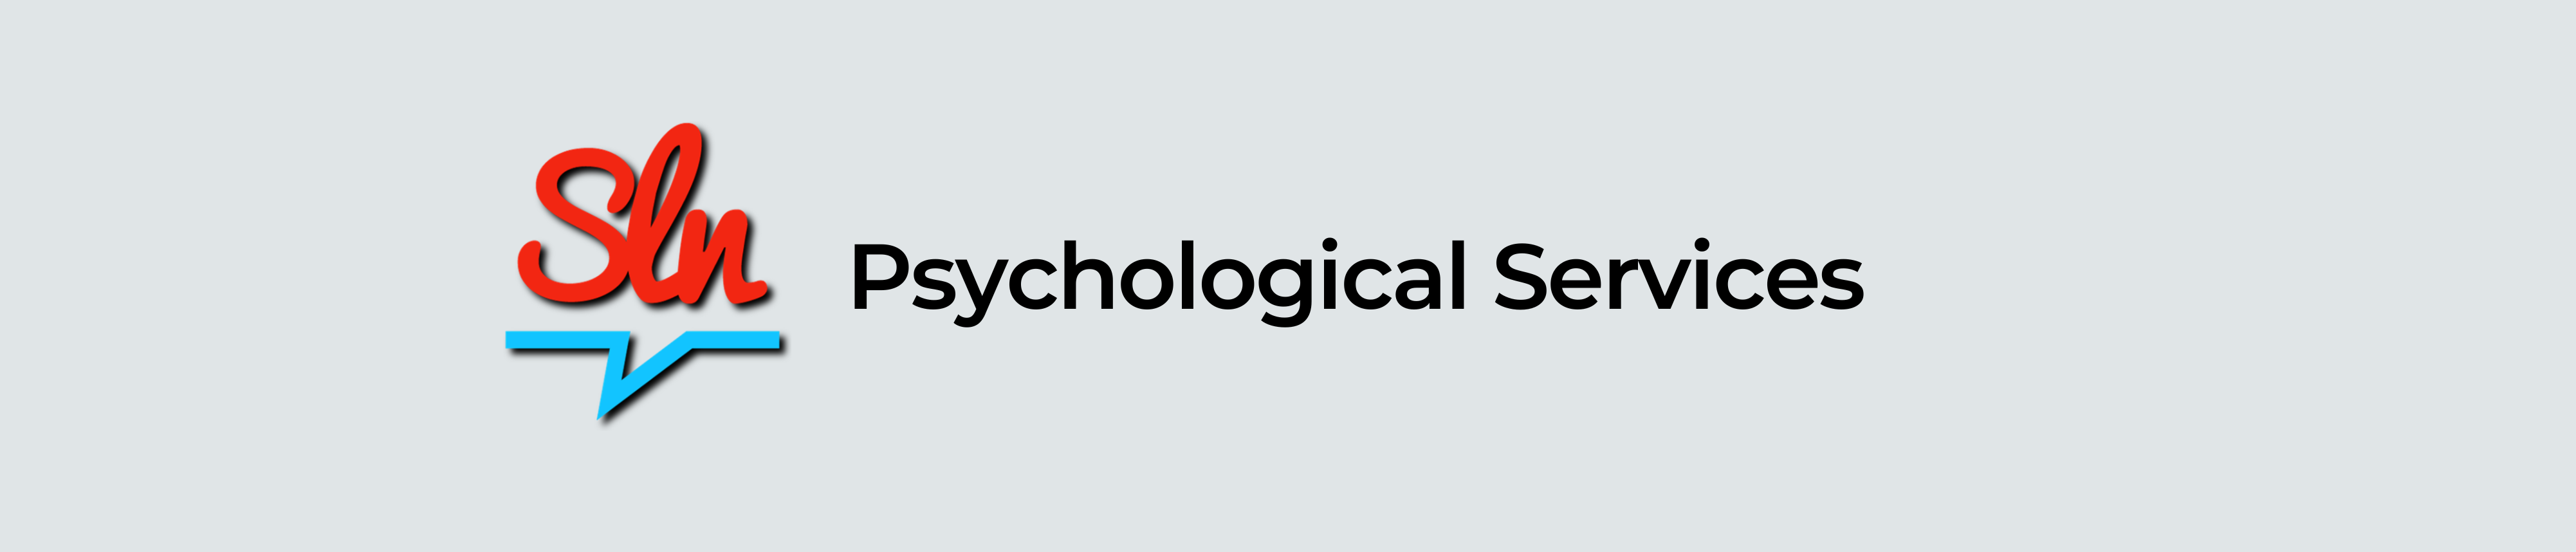 SLN - Psychological Services